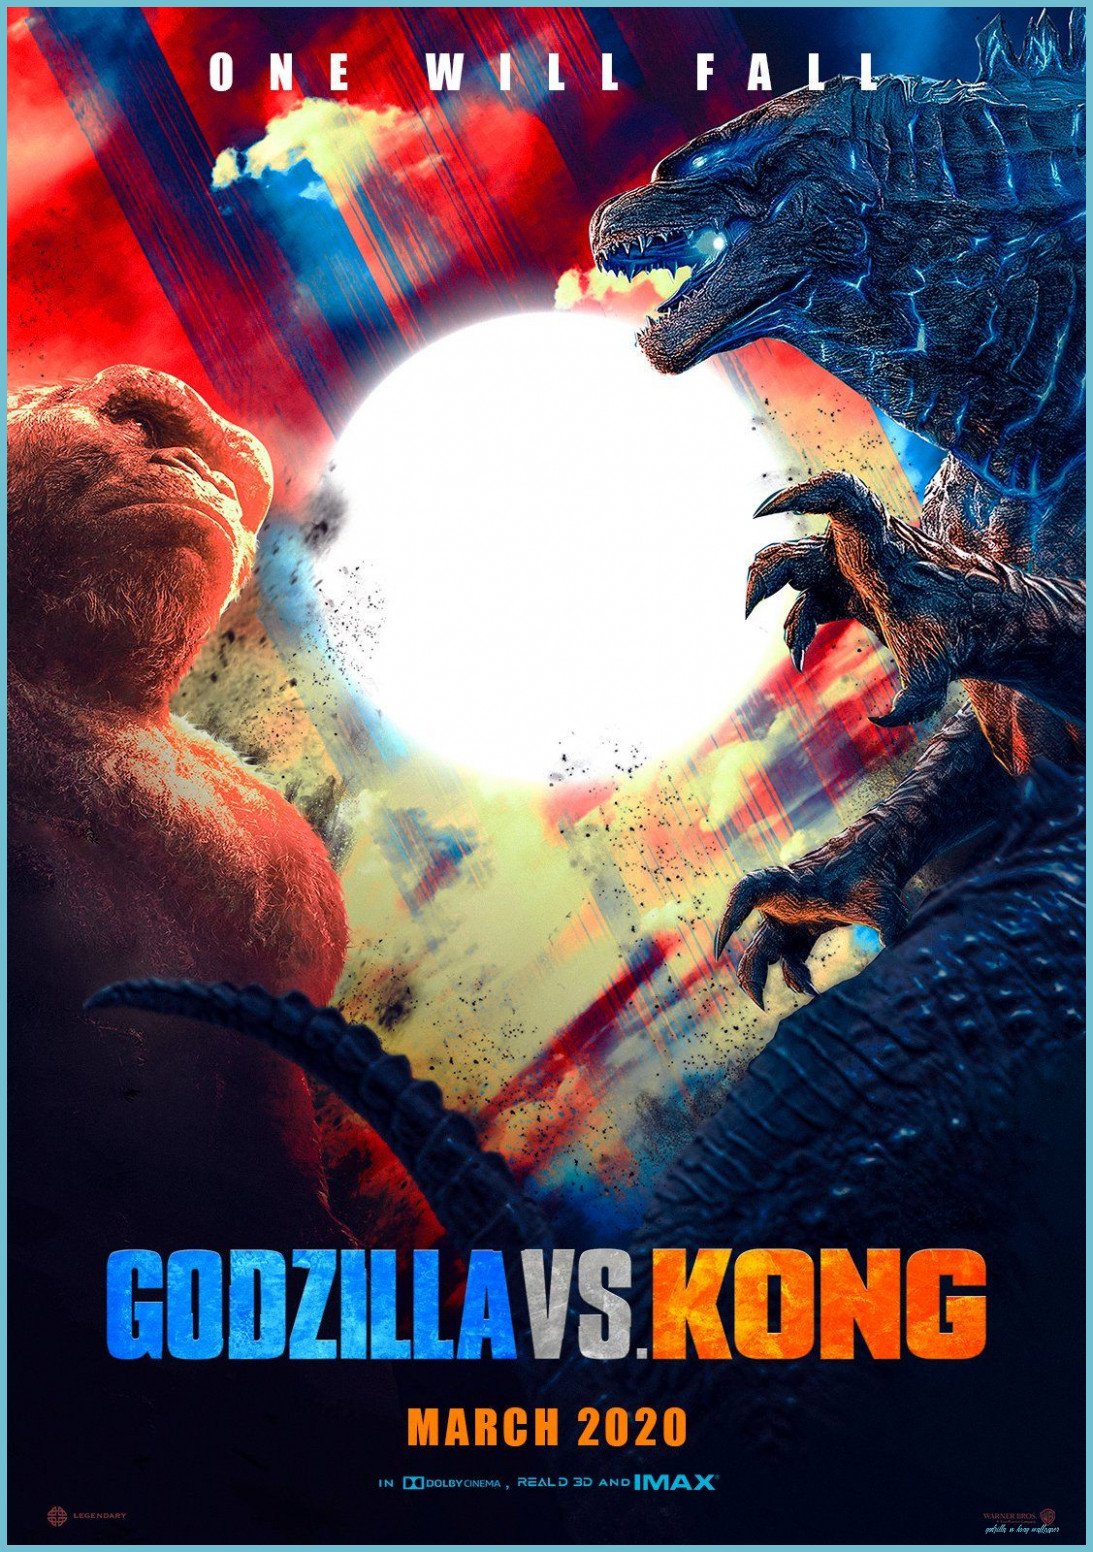 Twitter King Kong Vs Godzilla, Godzilla Wallpaper, Godzilla Vs Vs Kong Wallpaper